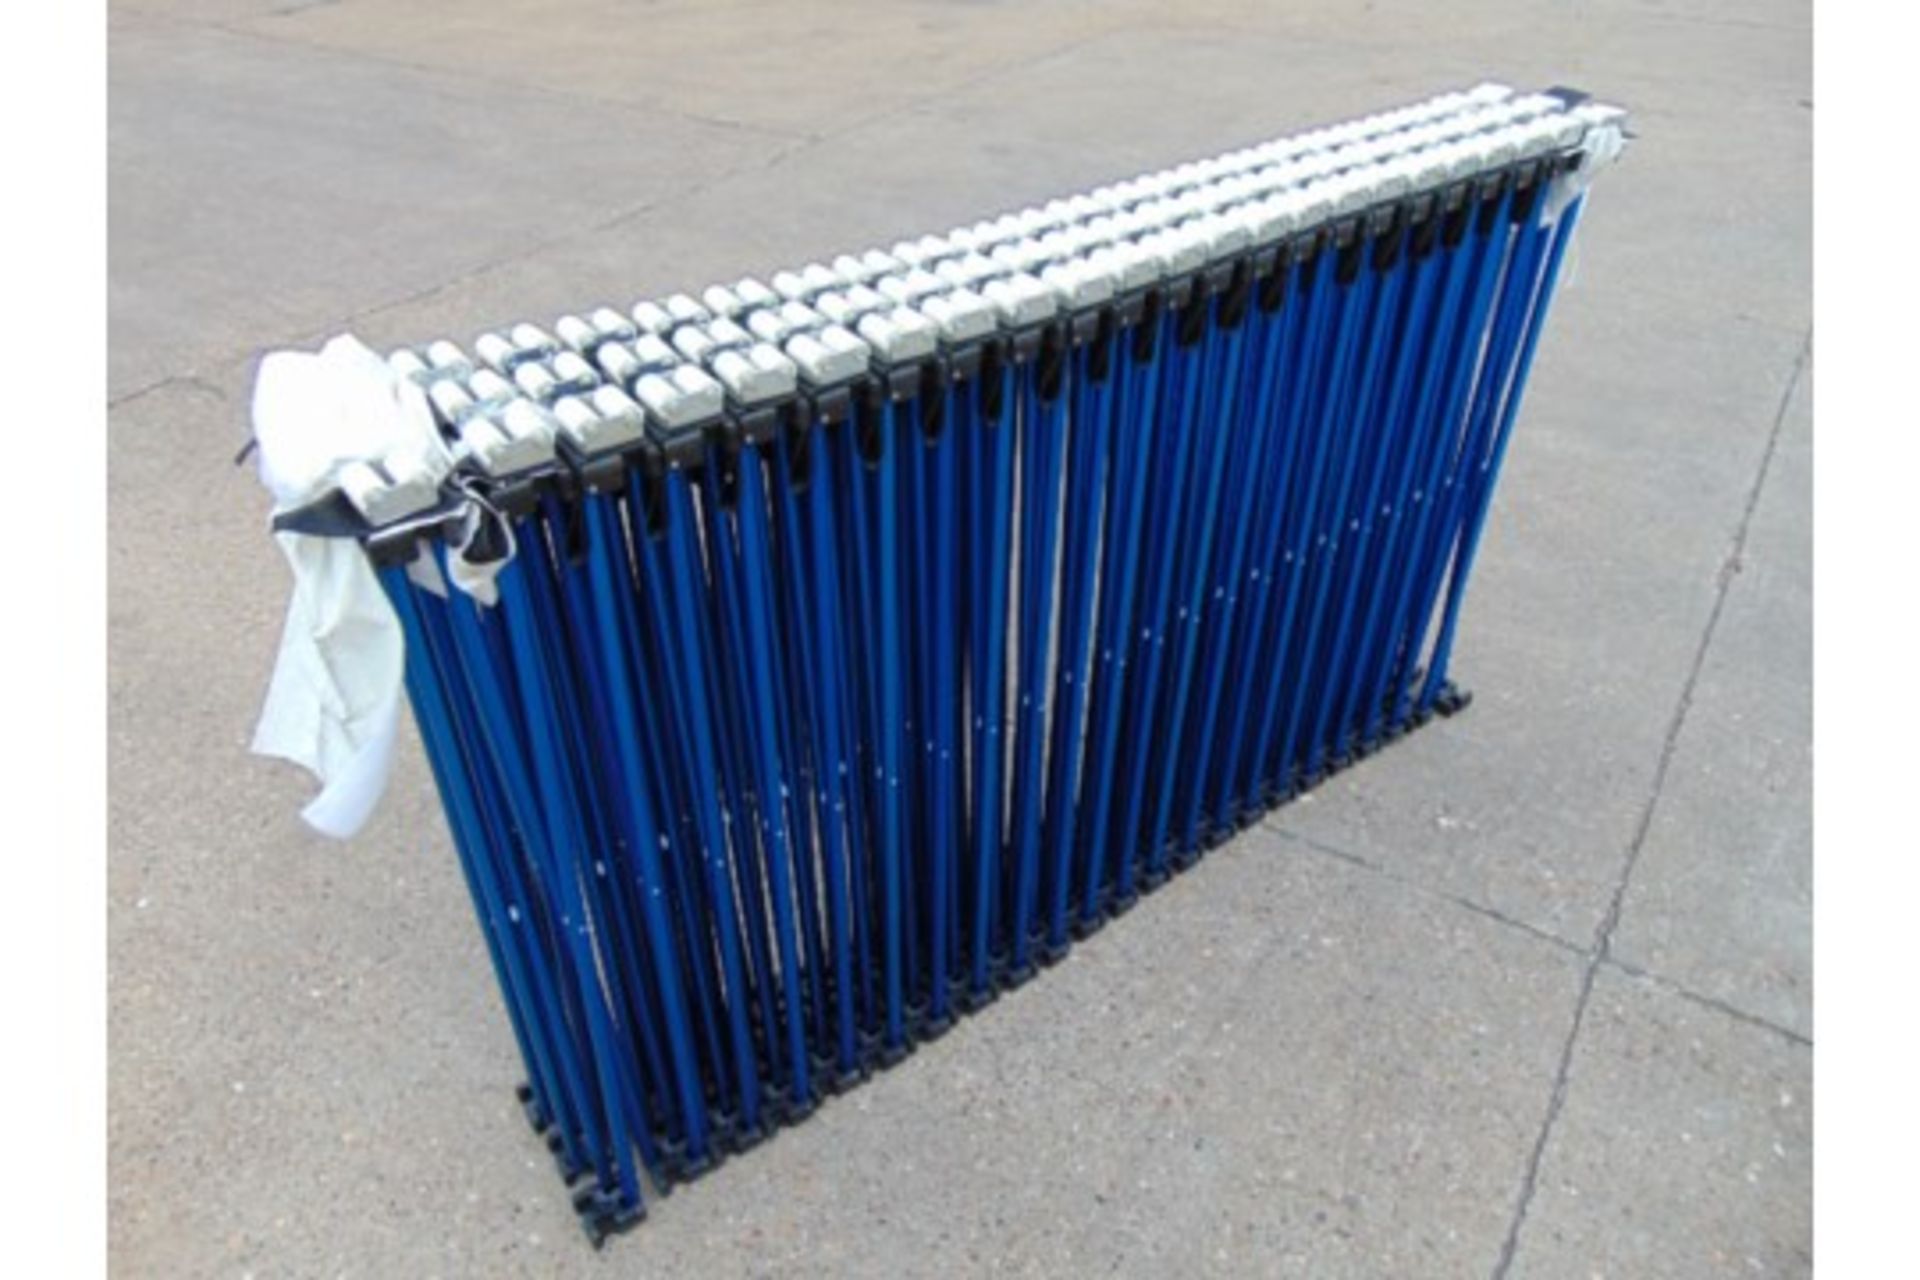 MD1 5m Folding Conveyor - Image 2 of 5